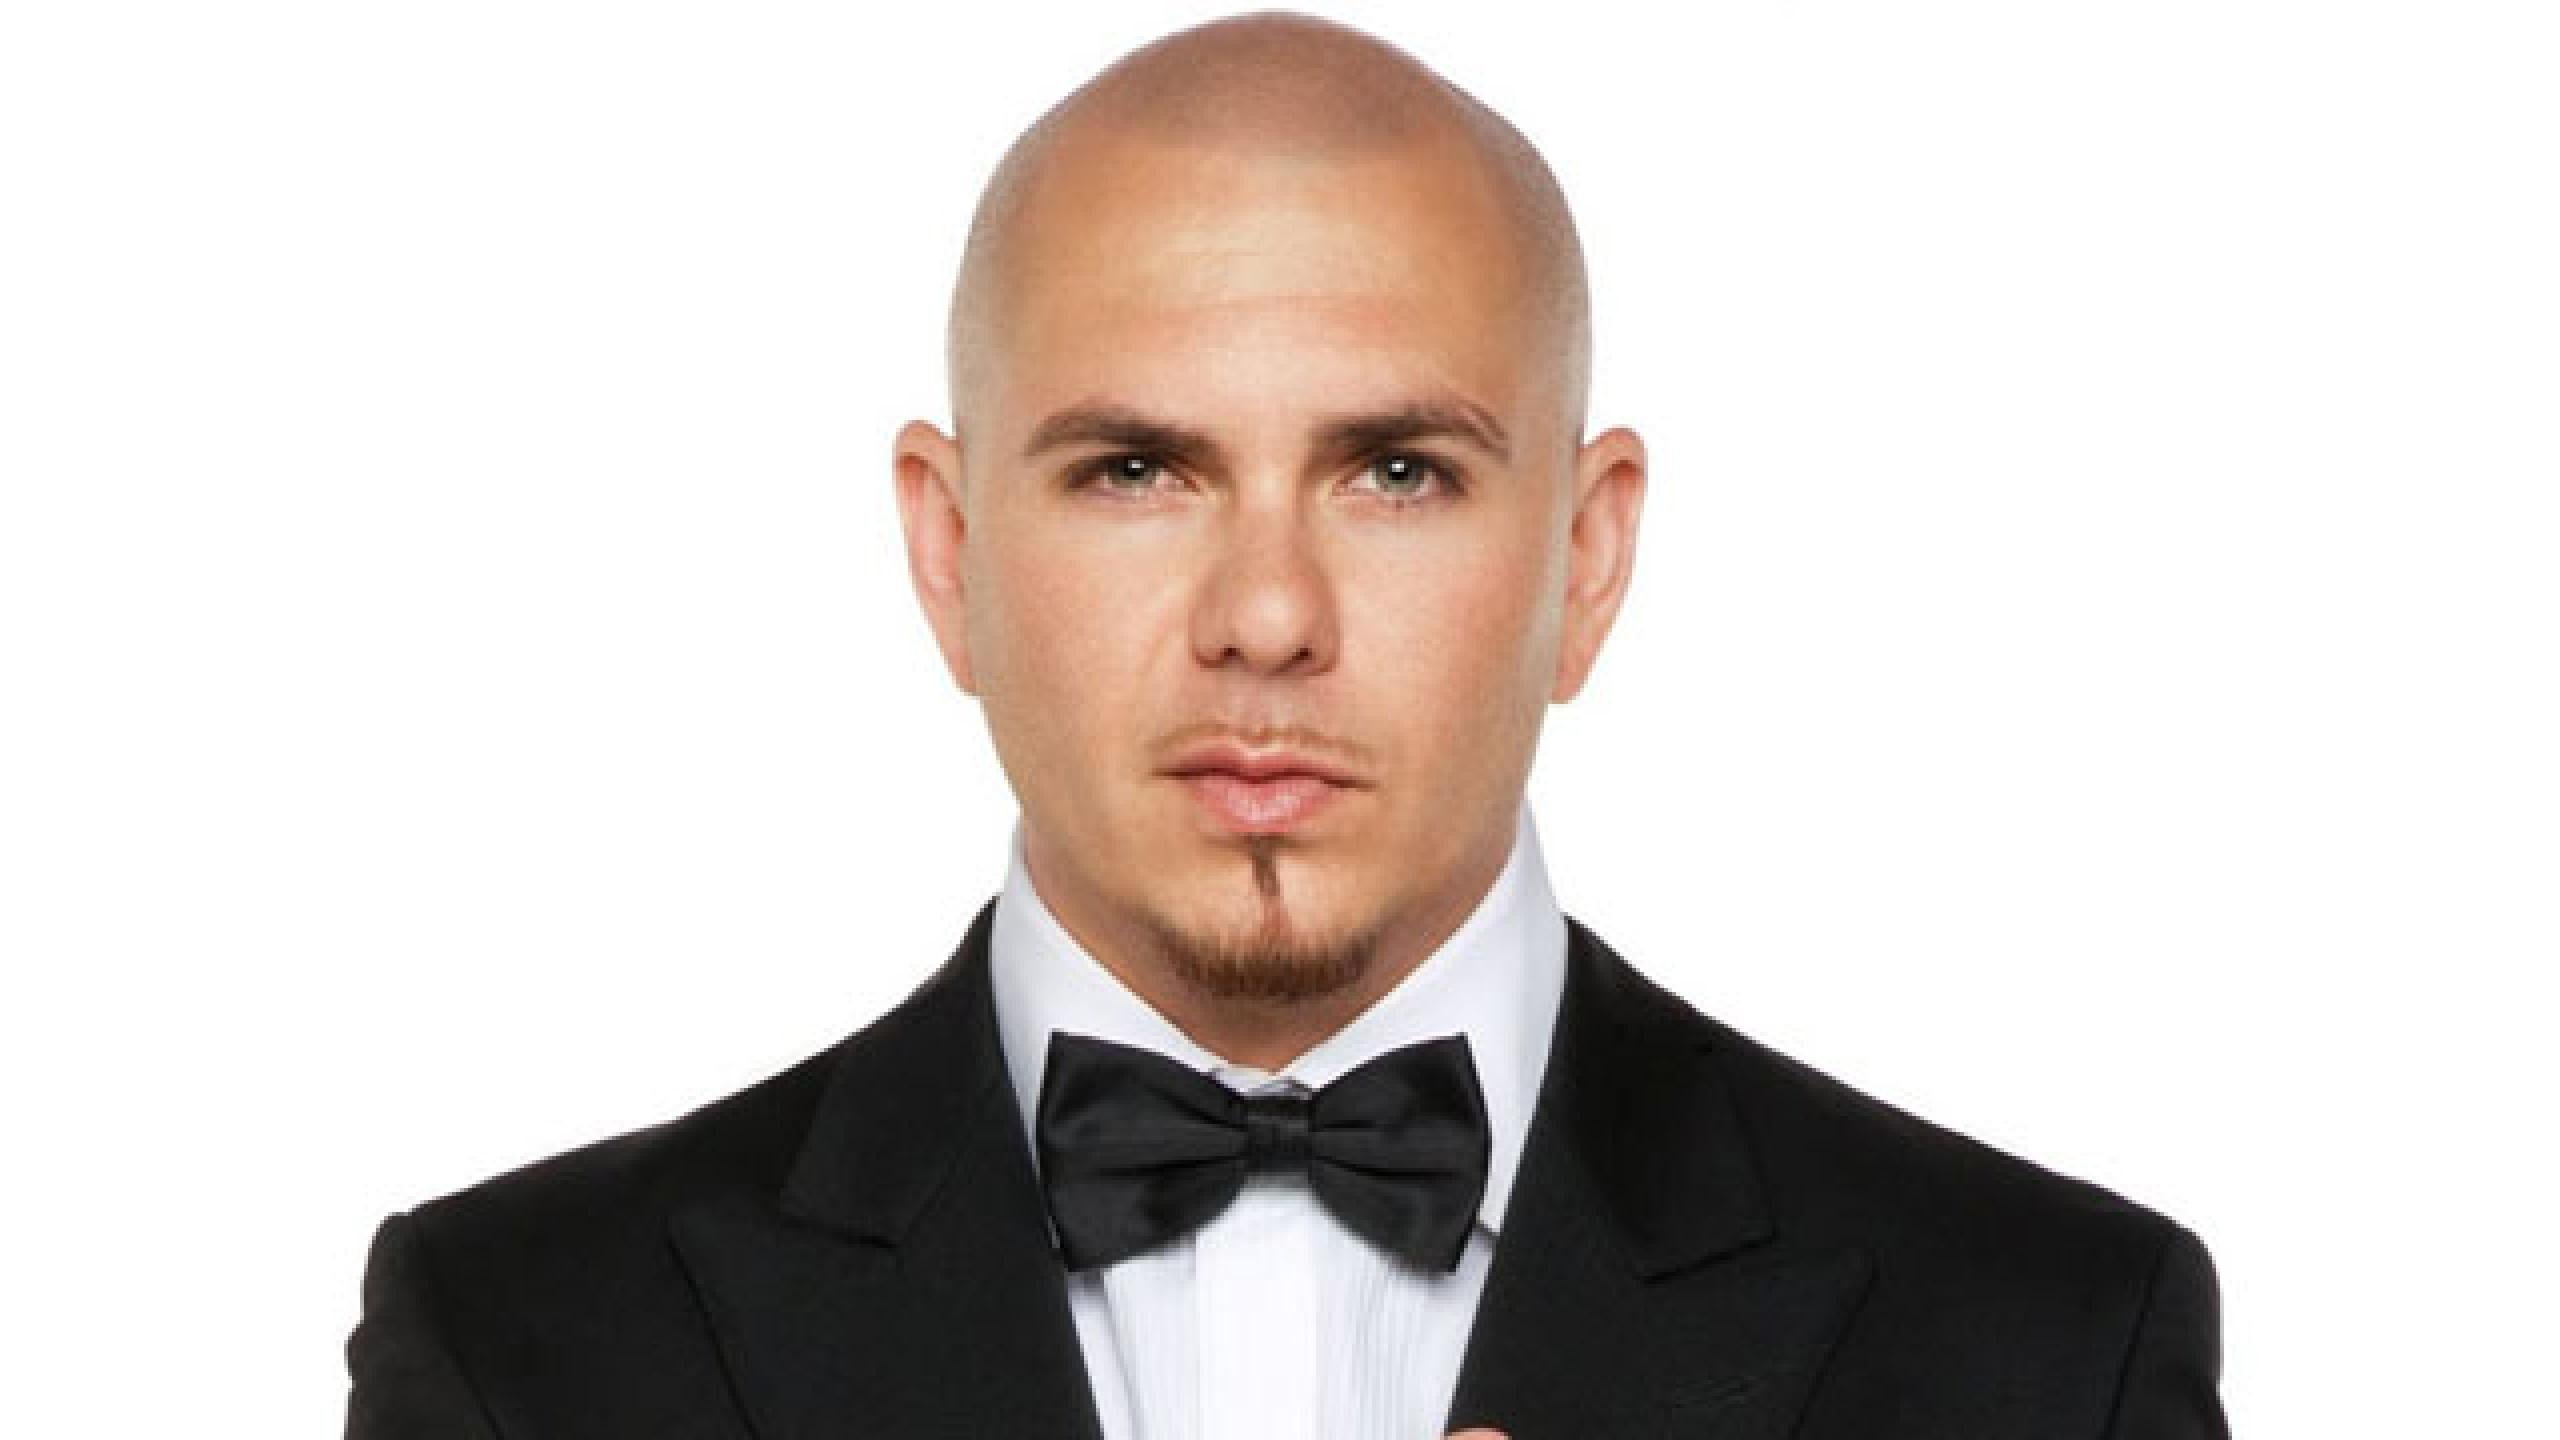 La movida vida amorosa de Pitbull: soltero y con 6 hijos